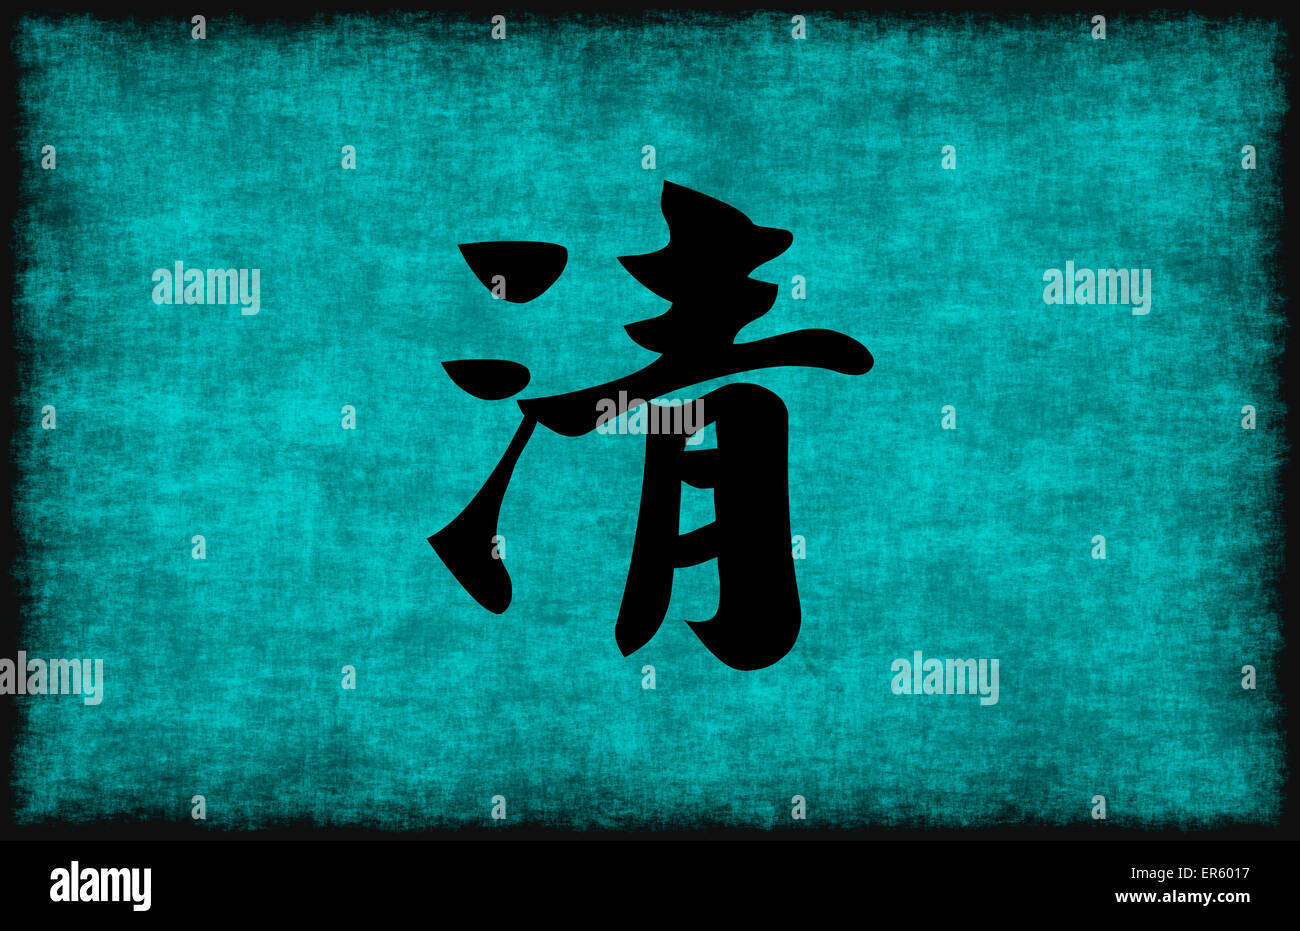 La peinture des caractères chinois pour plus de clarté en bleu comme concept Banque D'Images